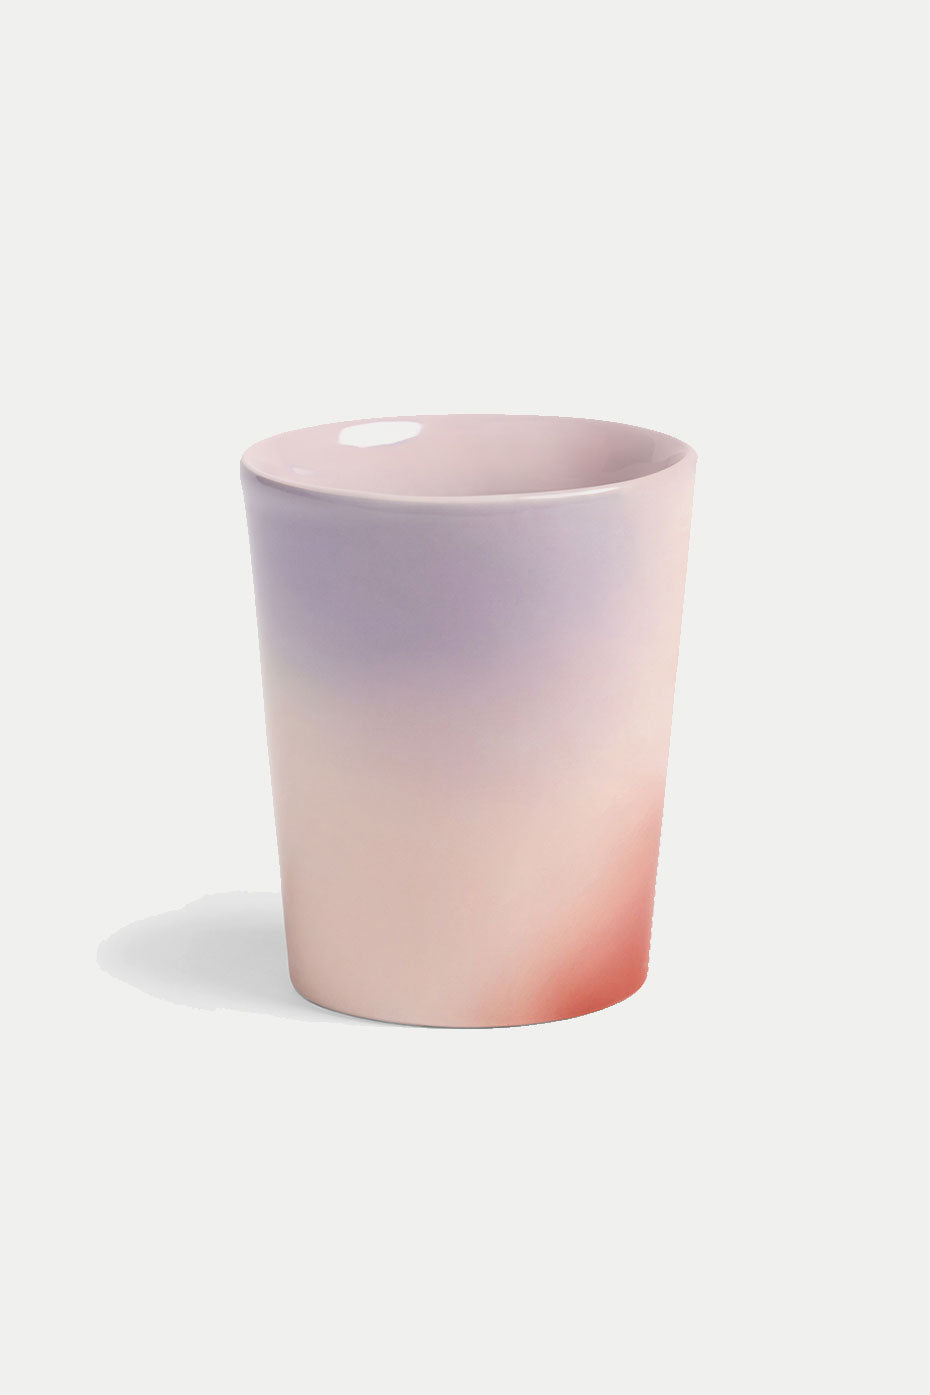 andklevering-pink-hue-mug-large